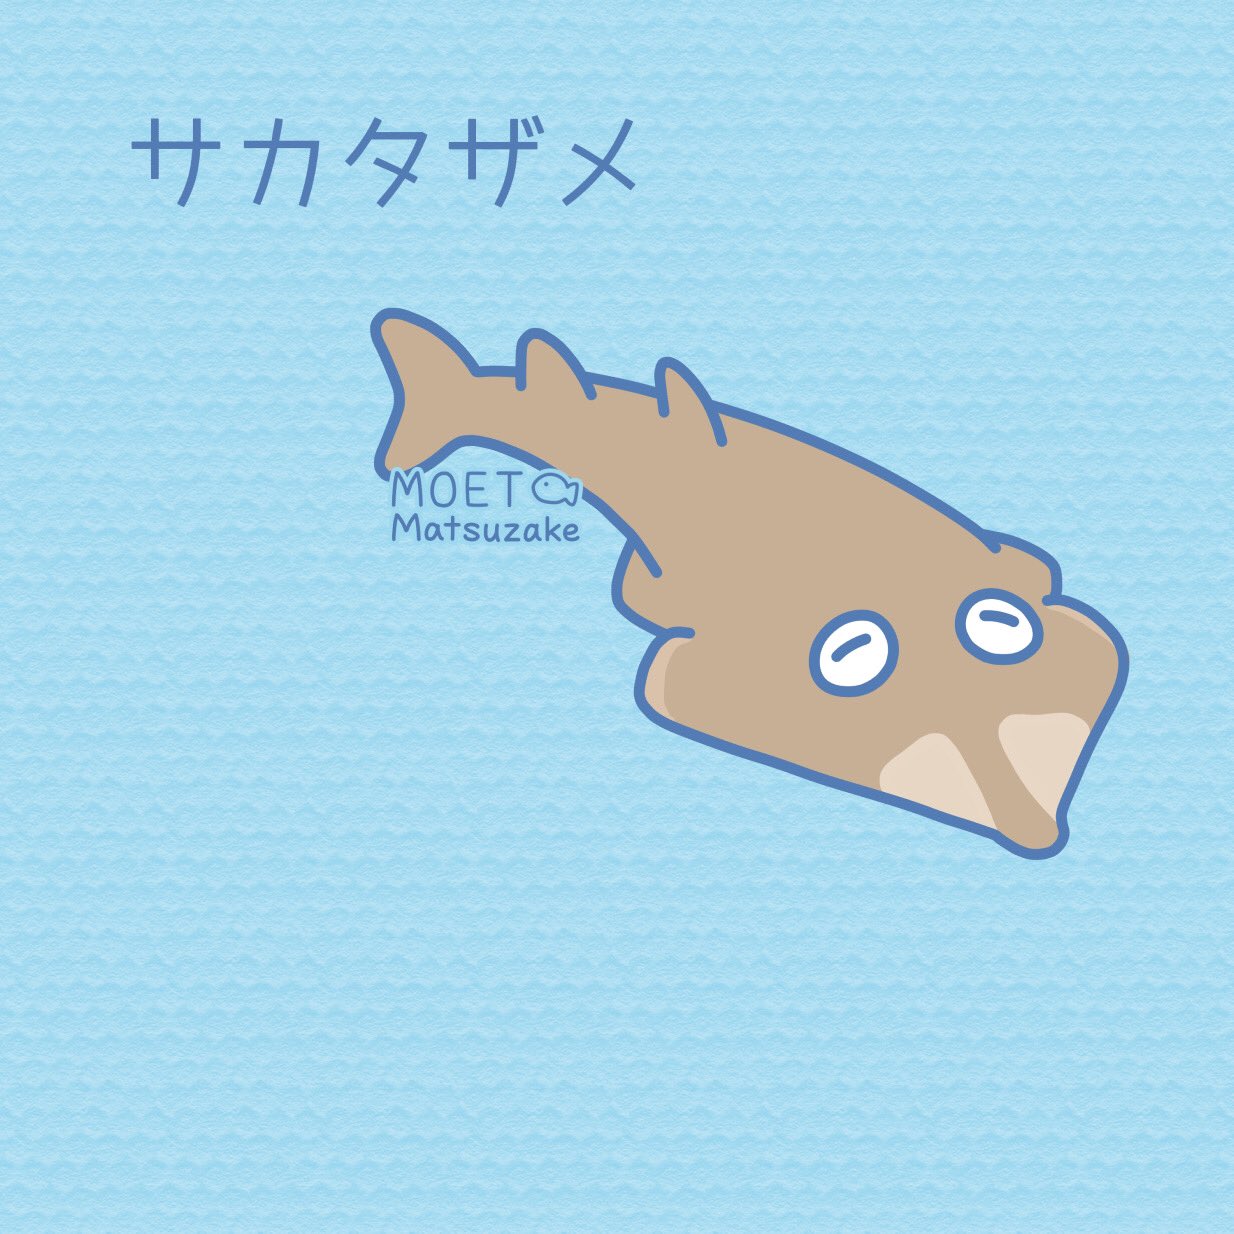 Uzivatel 松鮭モエ 描く作る Na Twitteru サカタザメ のっぺりしていてかわいい 実はサメでなくエイの仲間なんだって イラスト Art 魚 T Co Yatdgwhurf Twitter